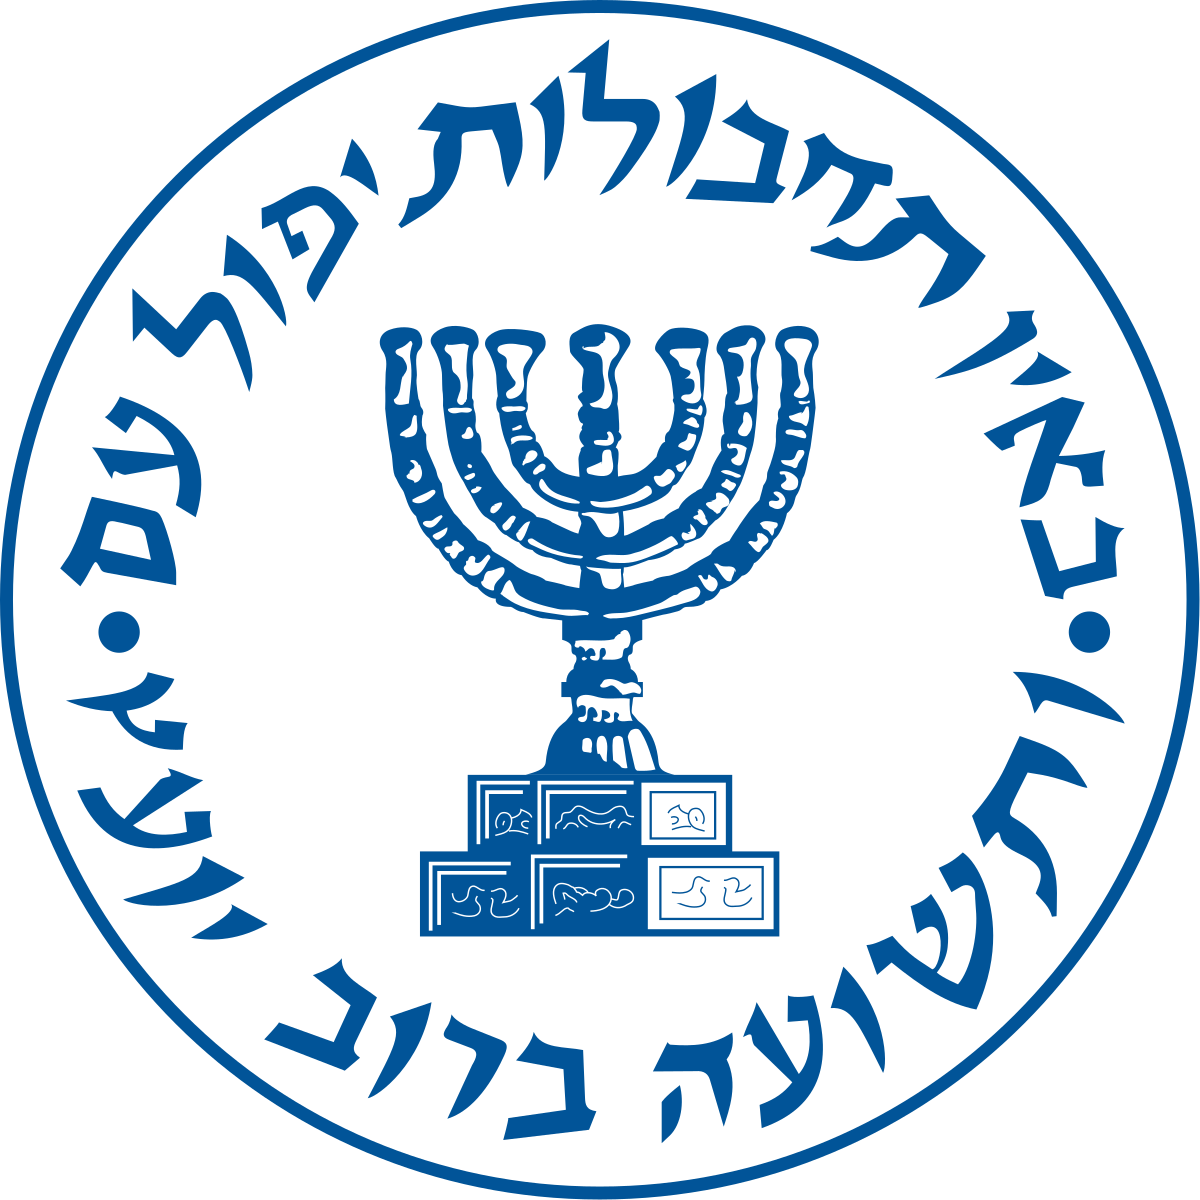 Mossad - Wikipedia